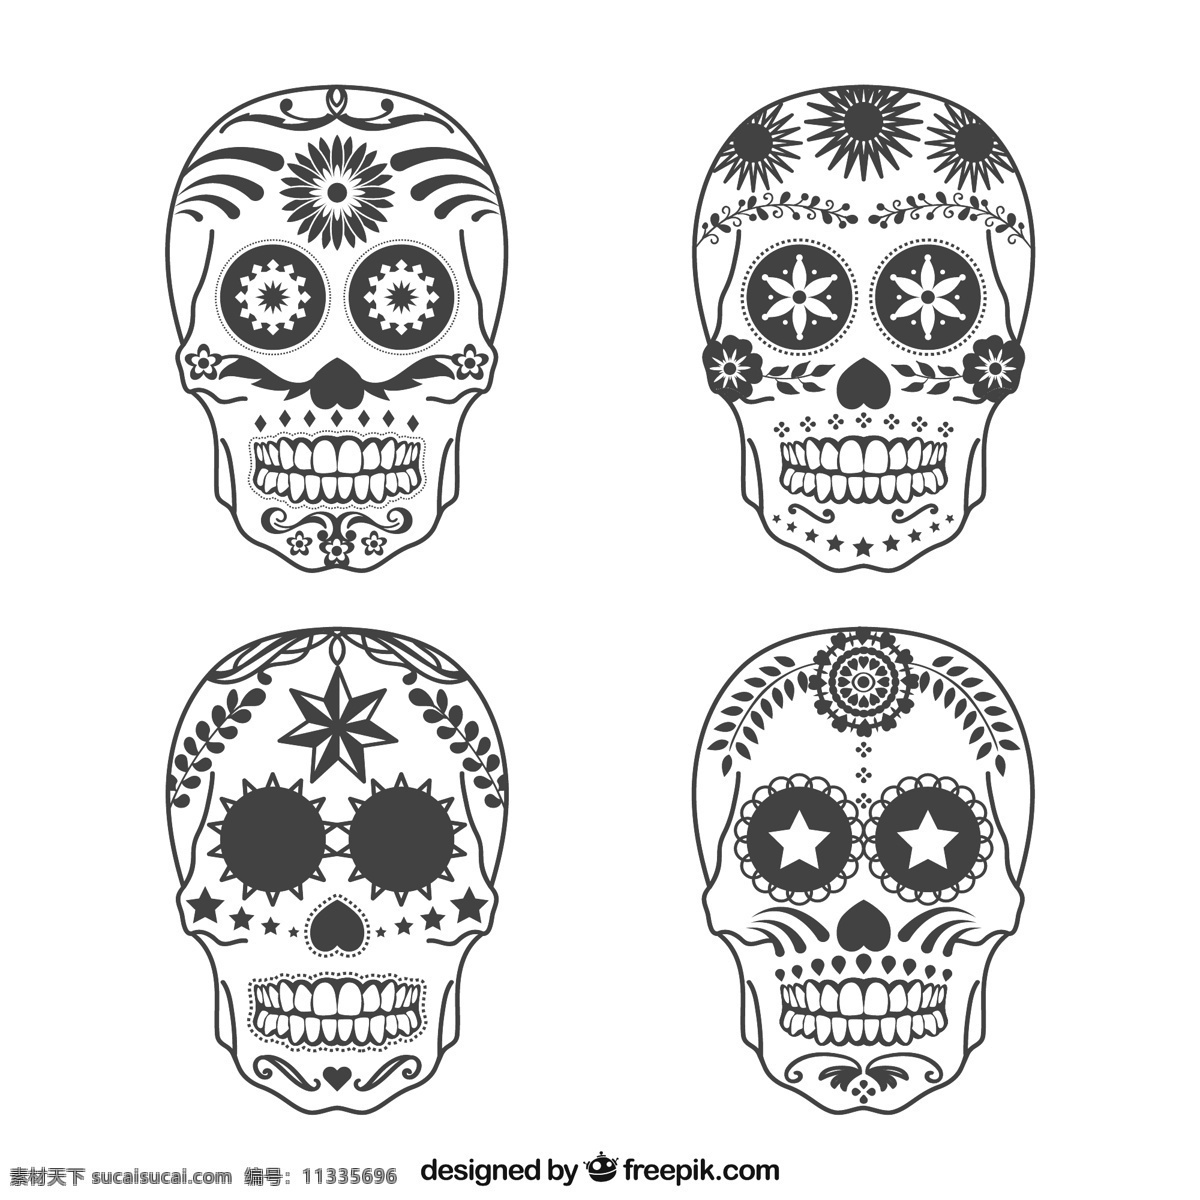 万圣节背景 万圣节 饰品 头骨 纹身 墨西哥 观赏 骷髅 繁体 死亡 十一月 传统 品种繁多 品种